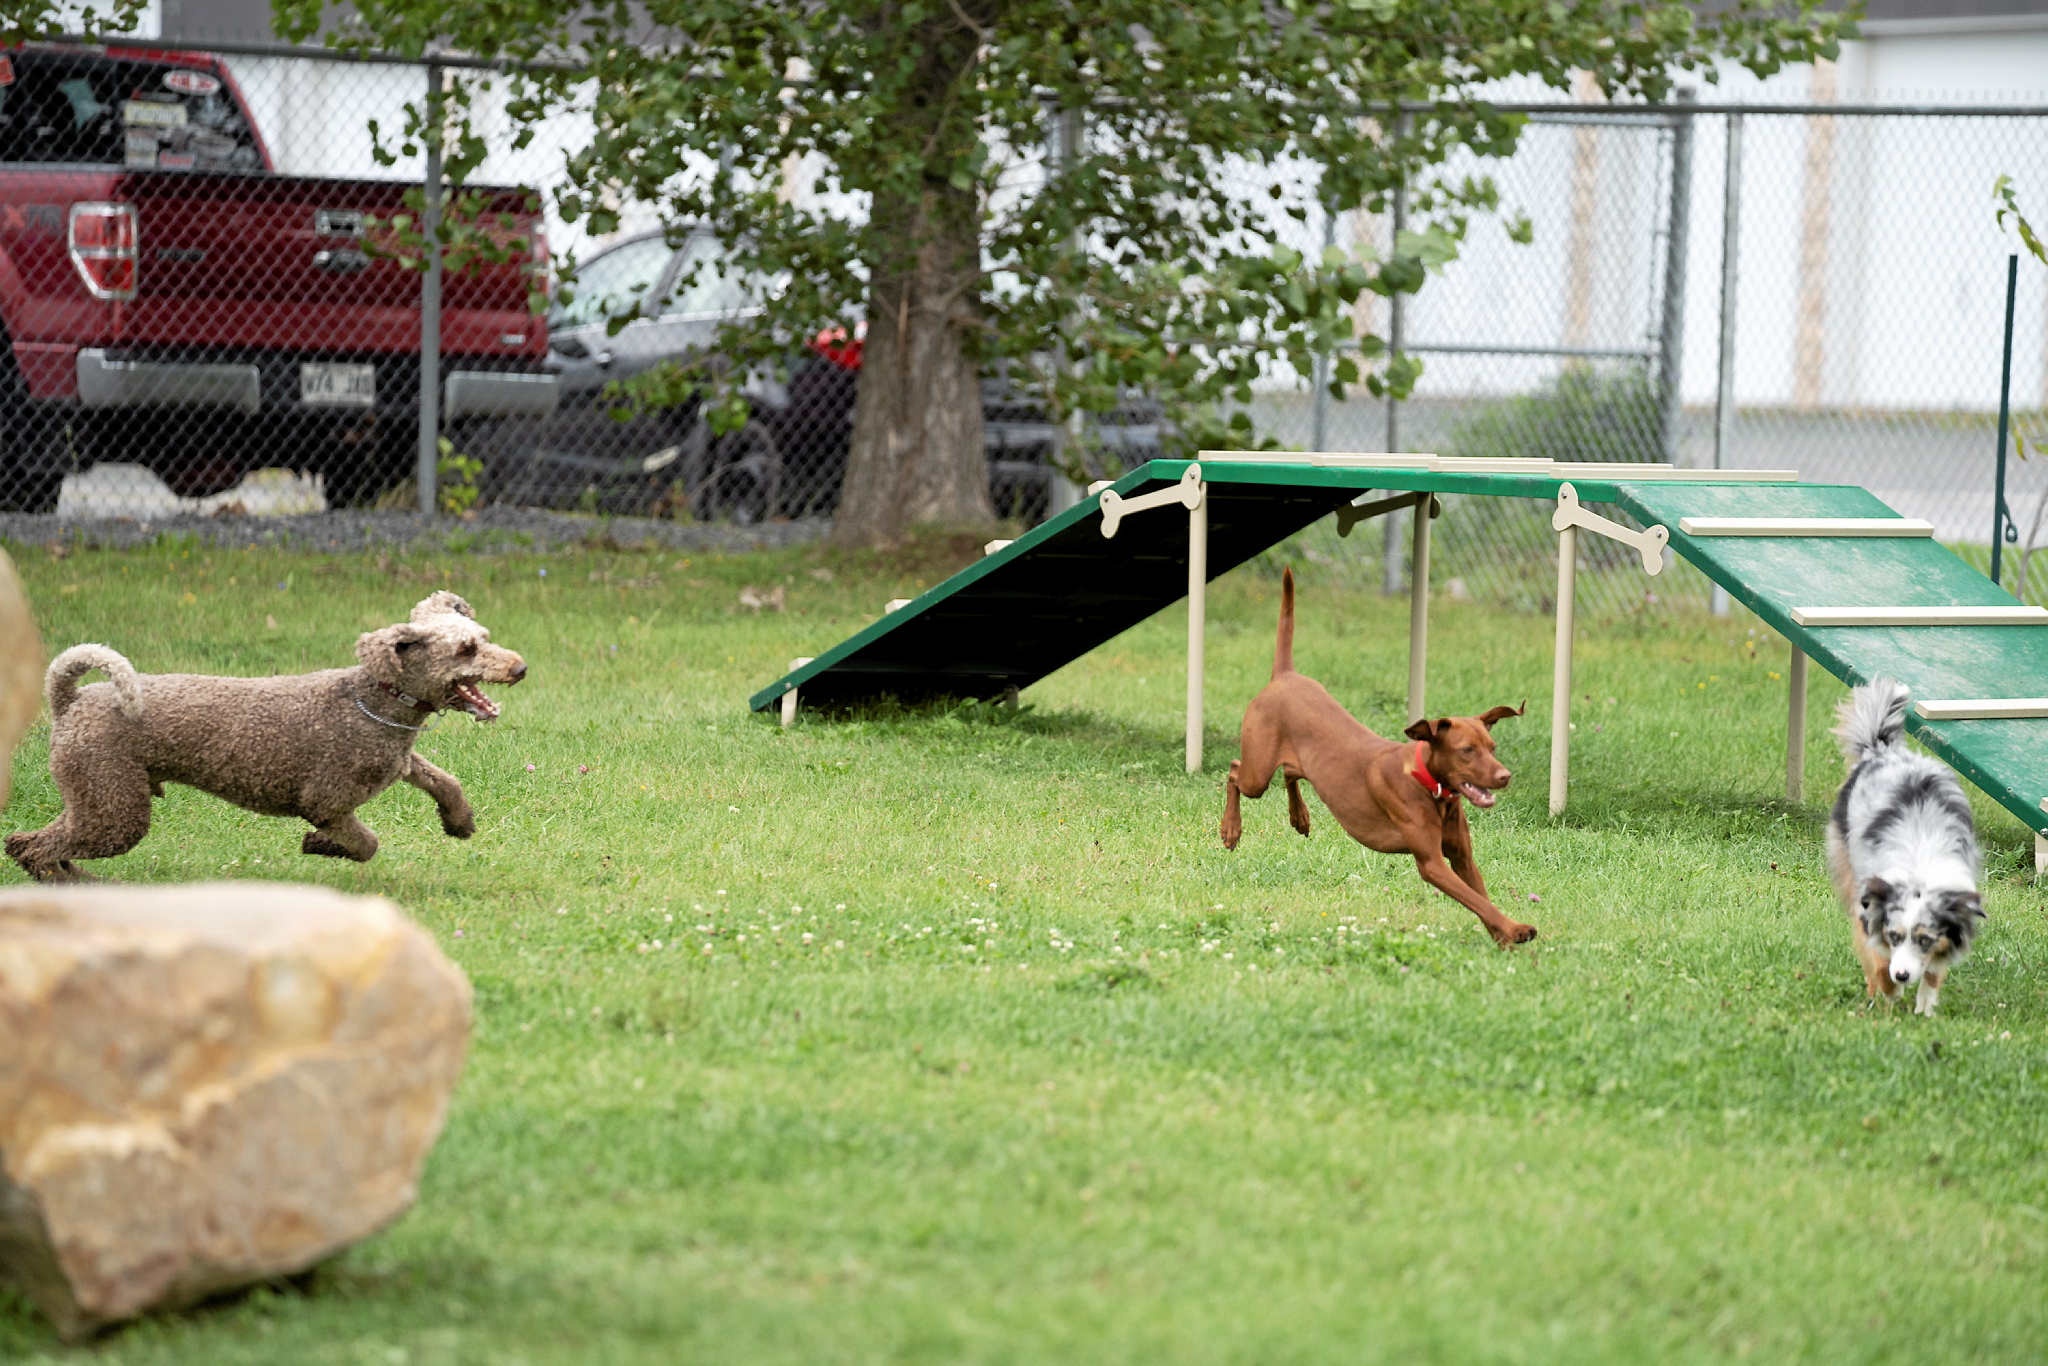 Mise en service du tout nouveau parc à chiens au parc Bissonnette